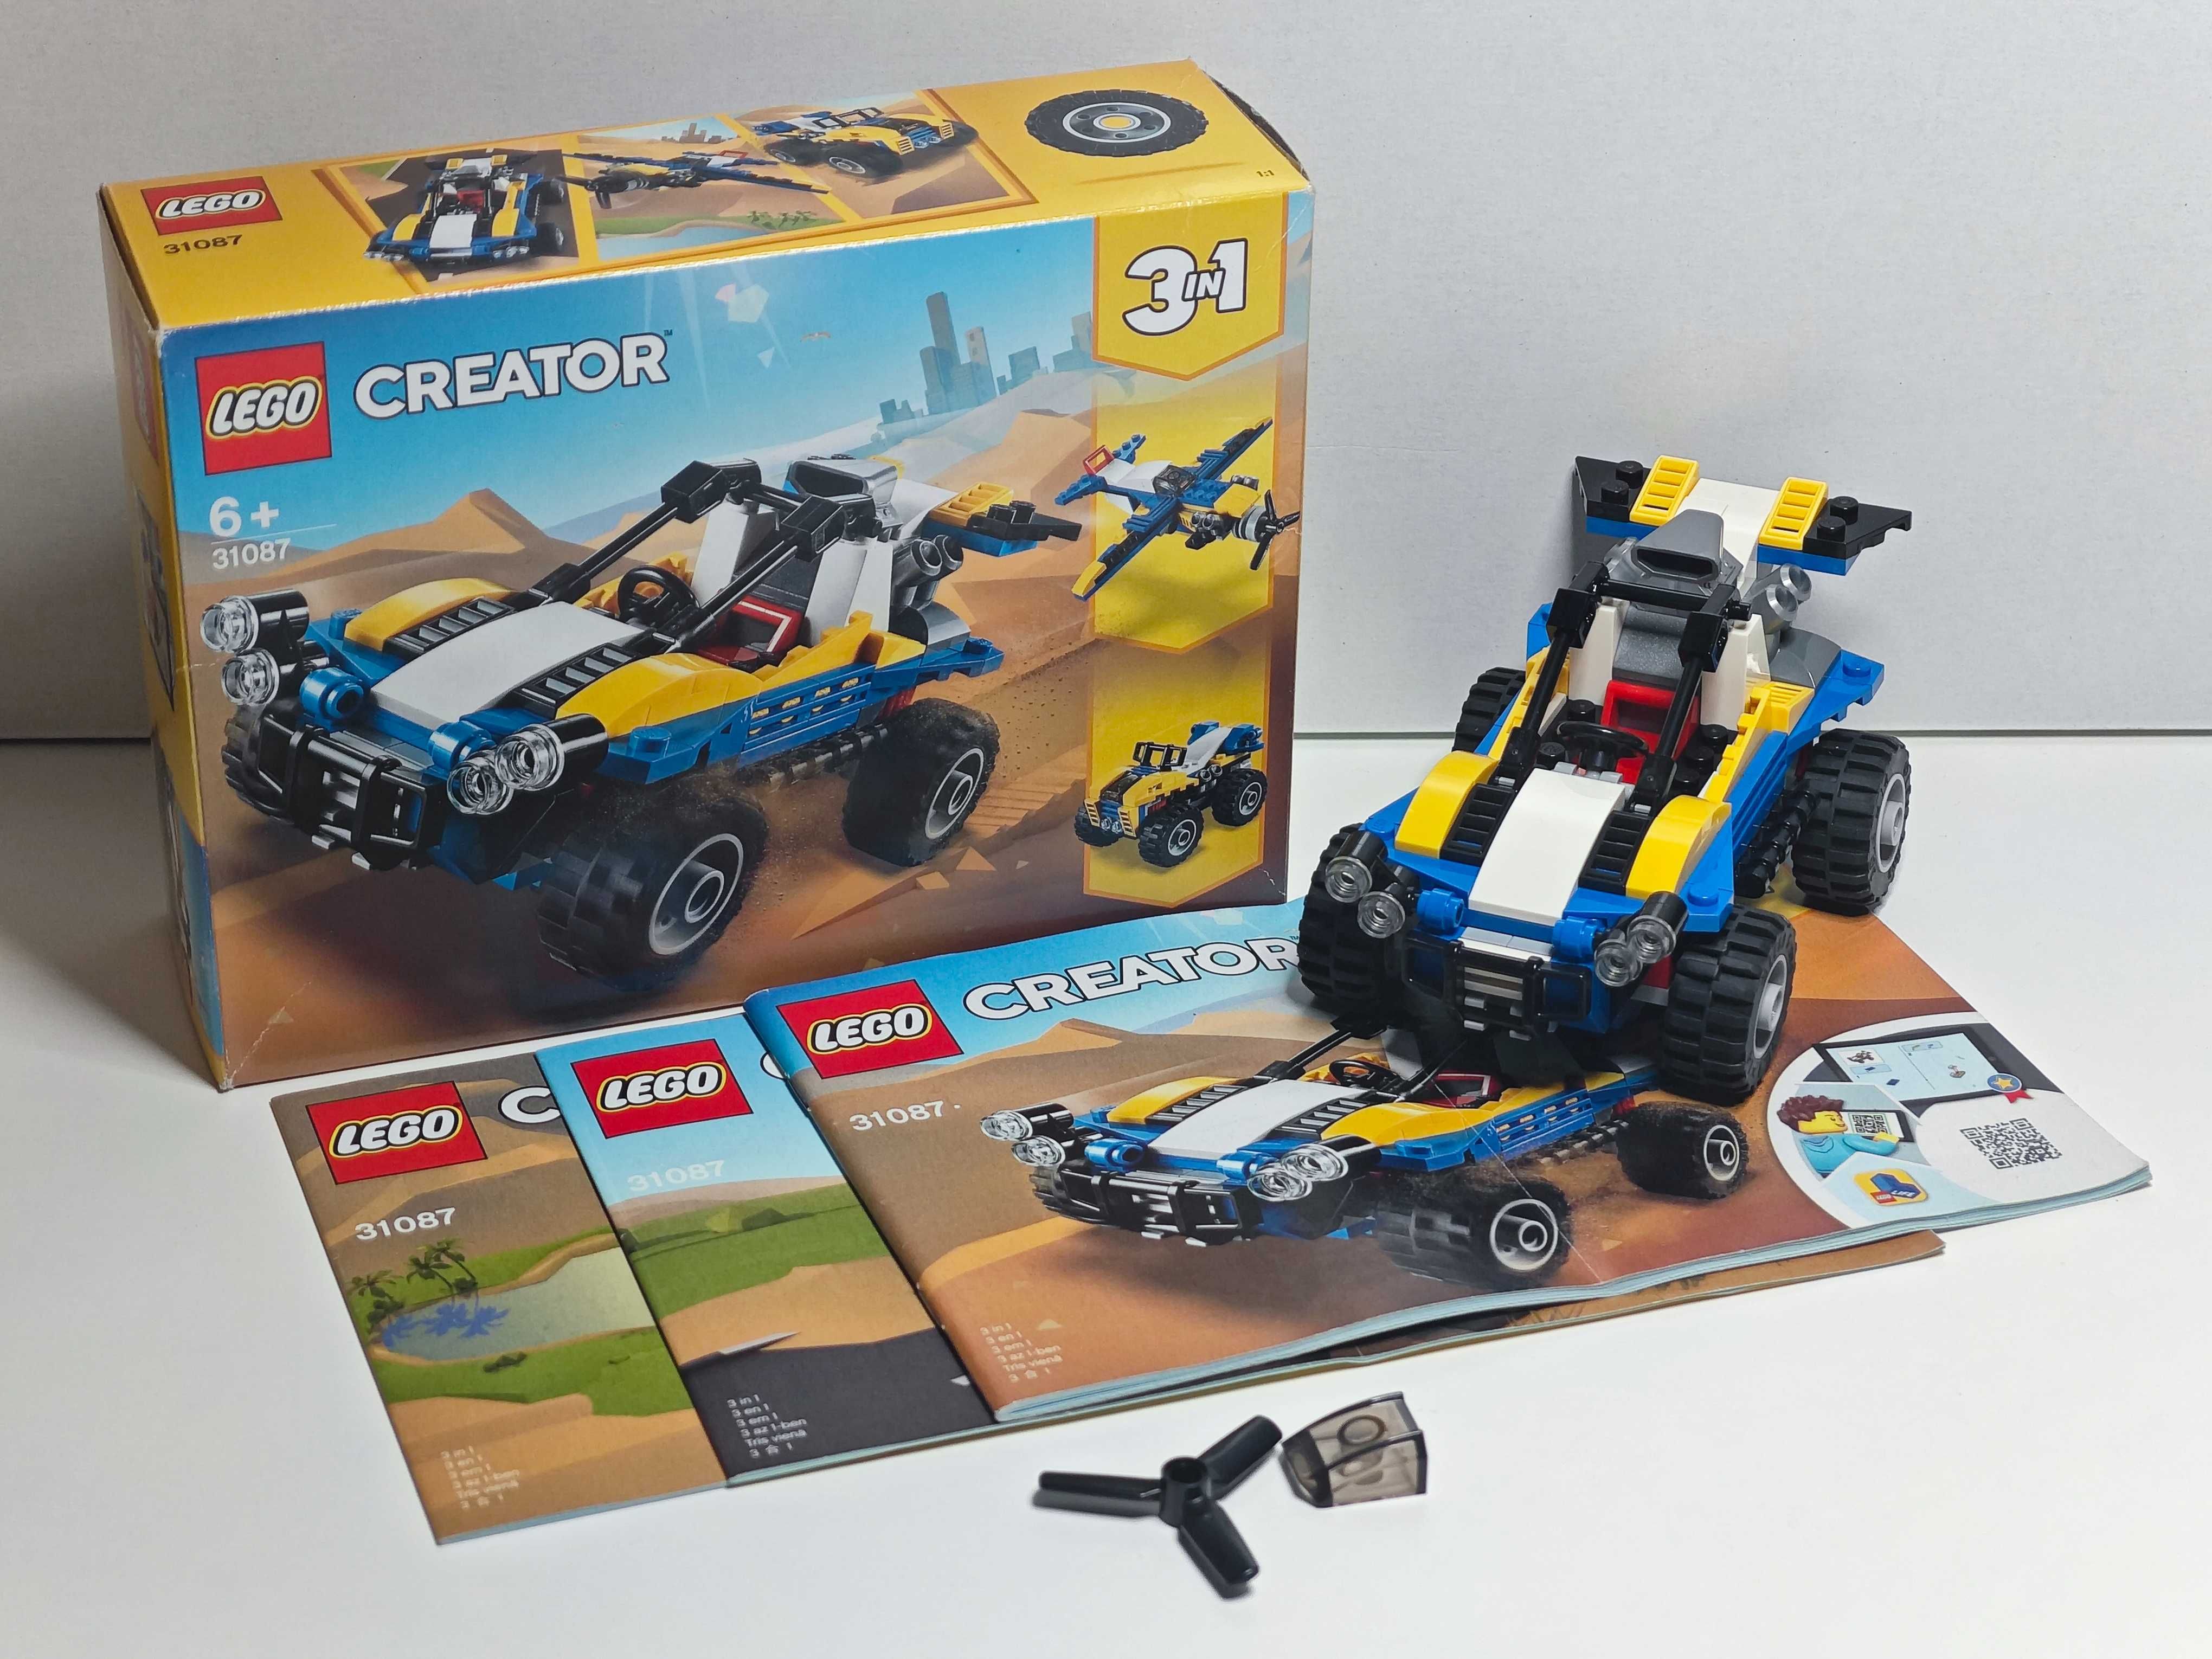 Lego Creator 3in1 31087